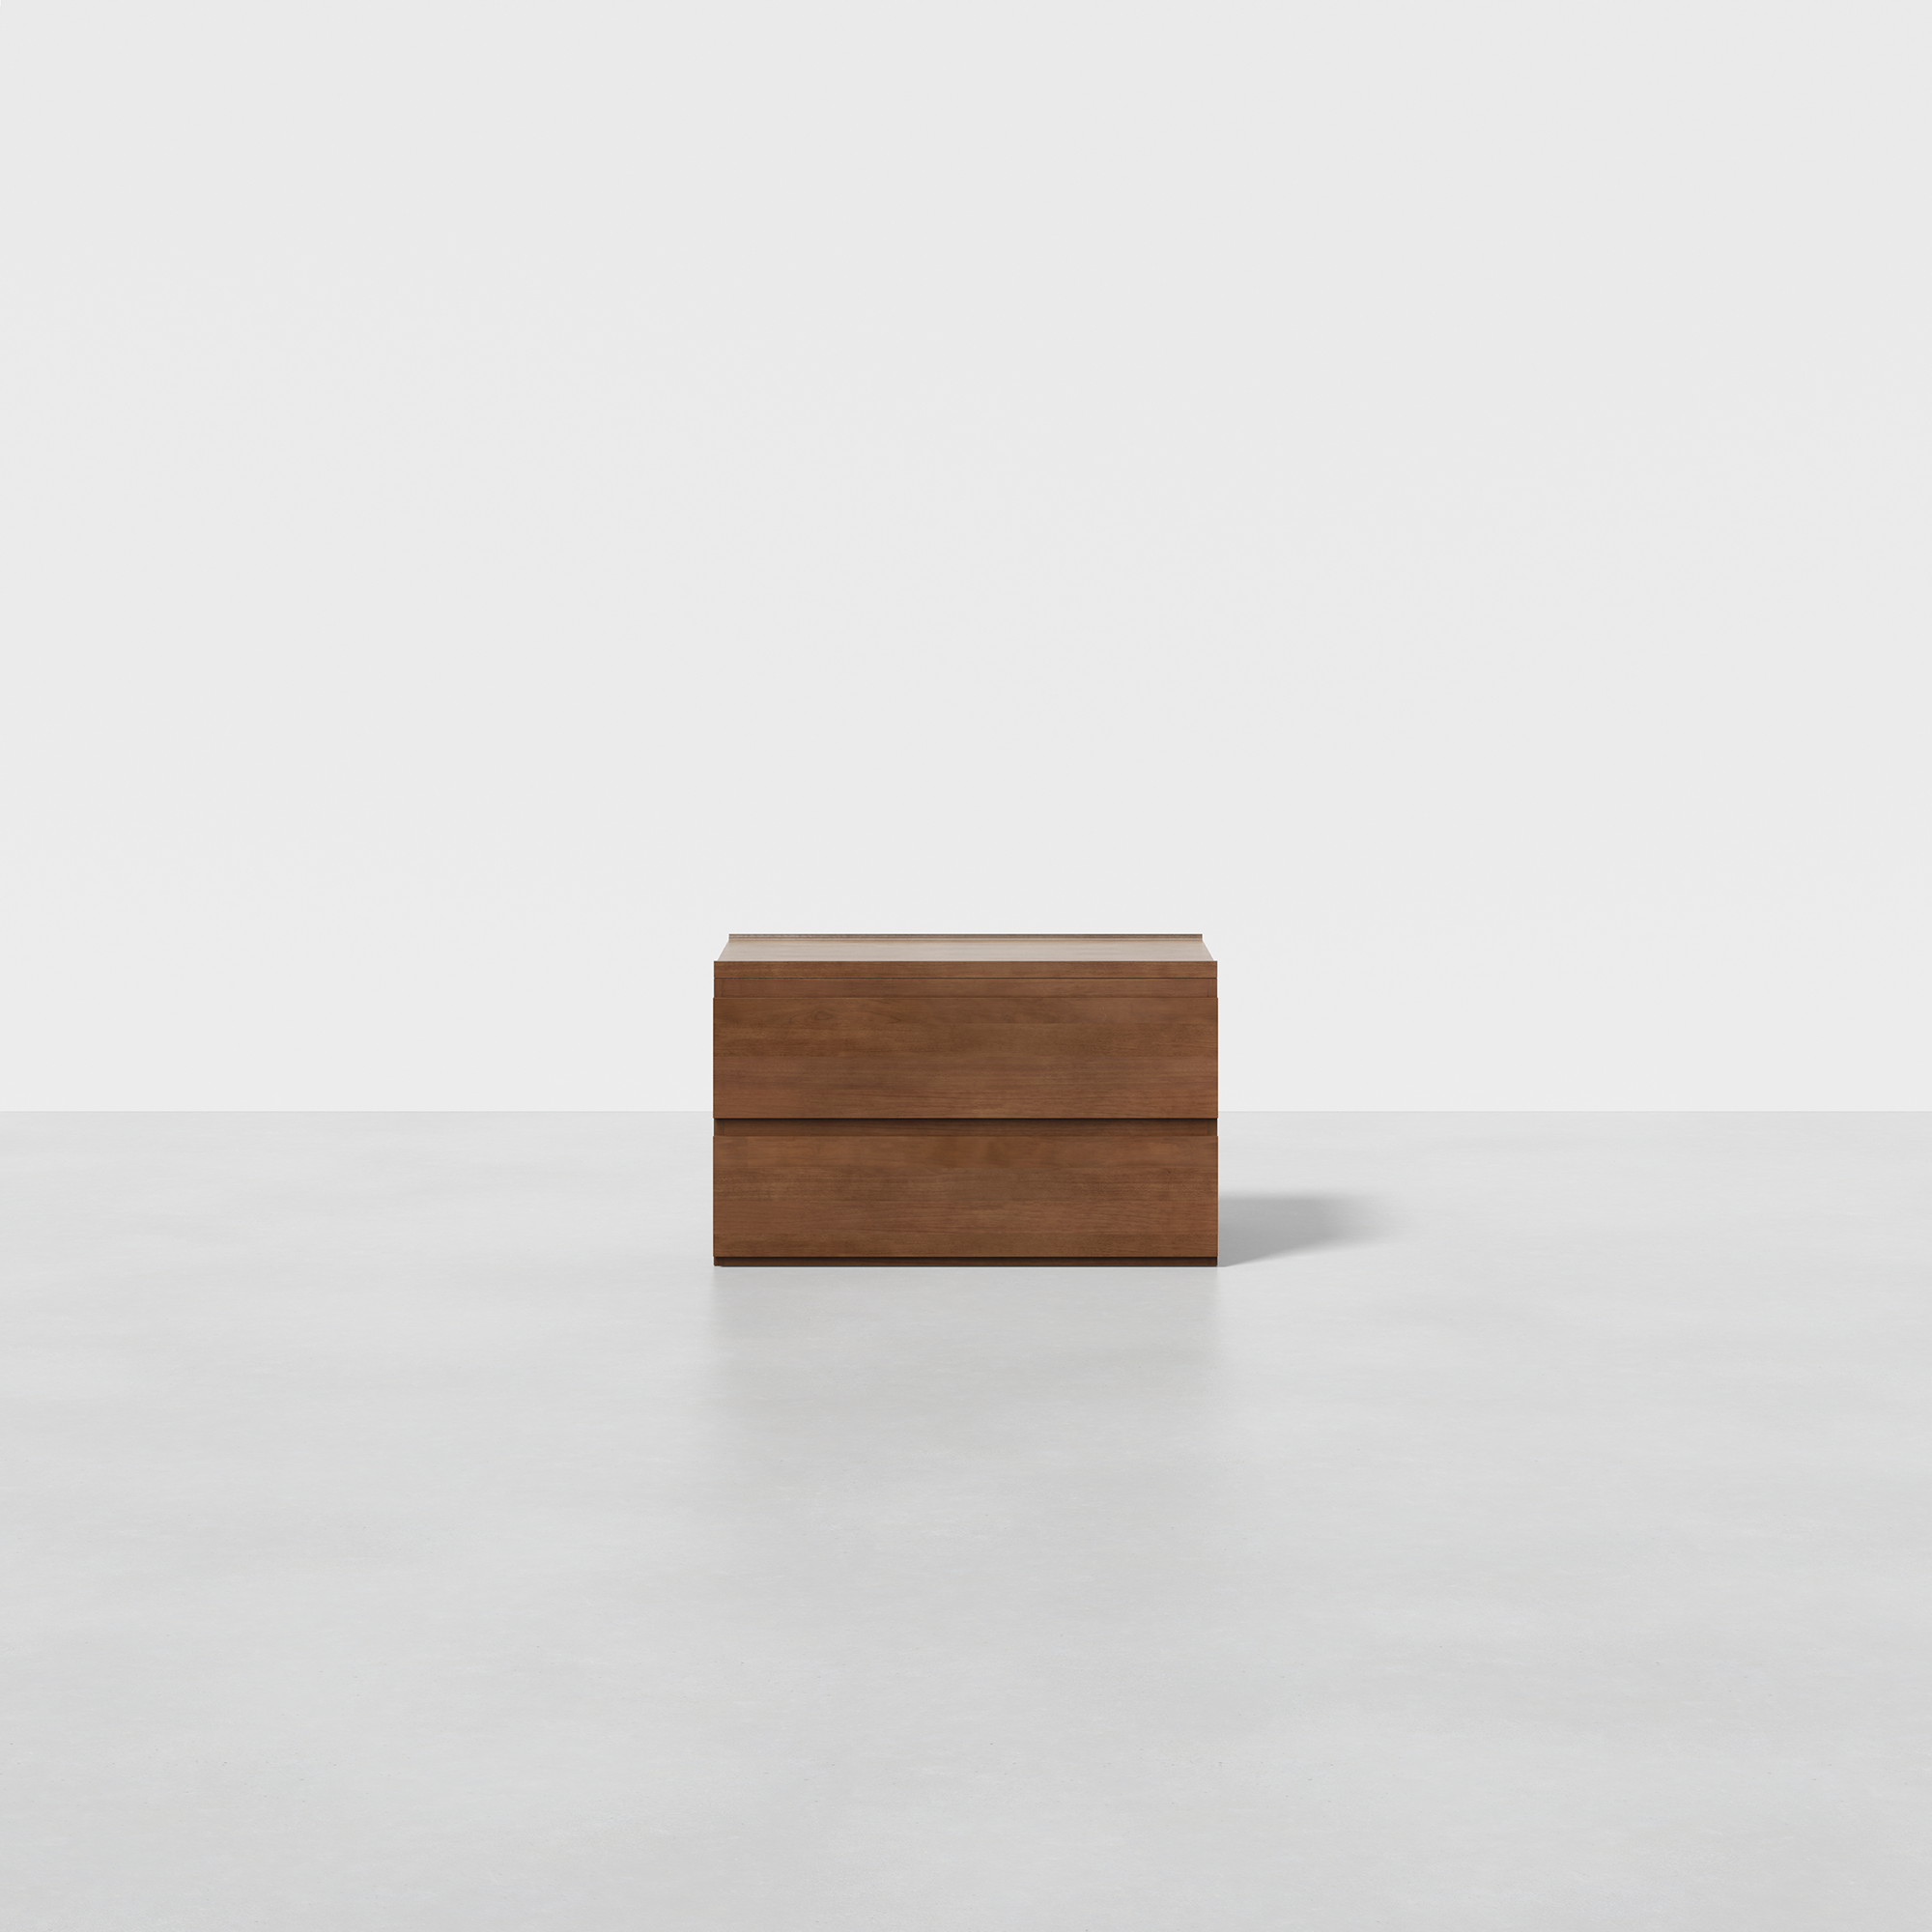 PDP Image: The Dresser (2x1 - Walnut) - Render - Front